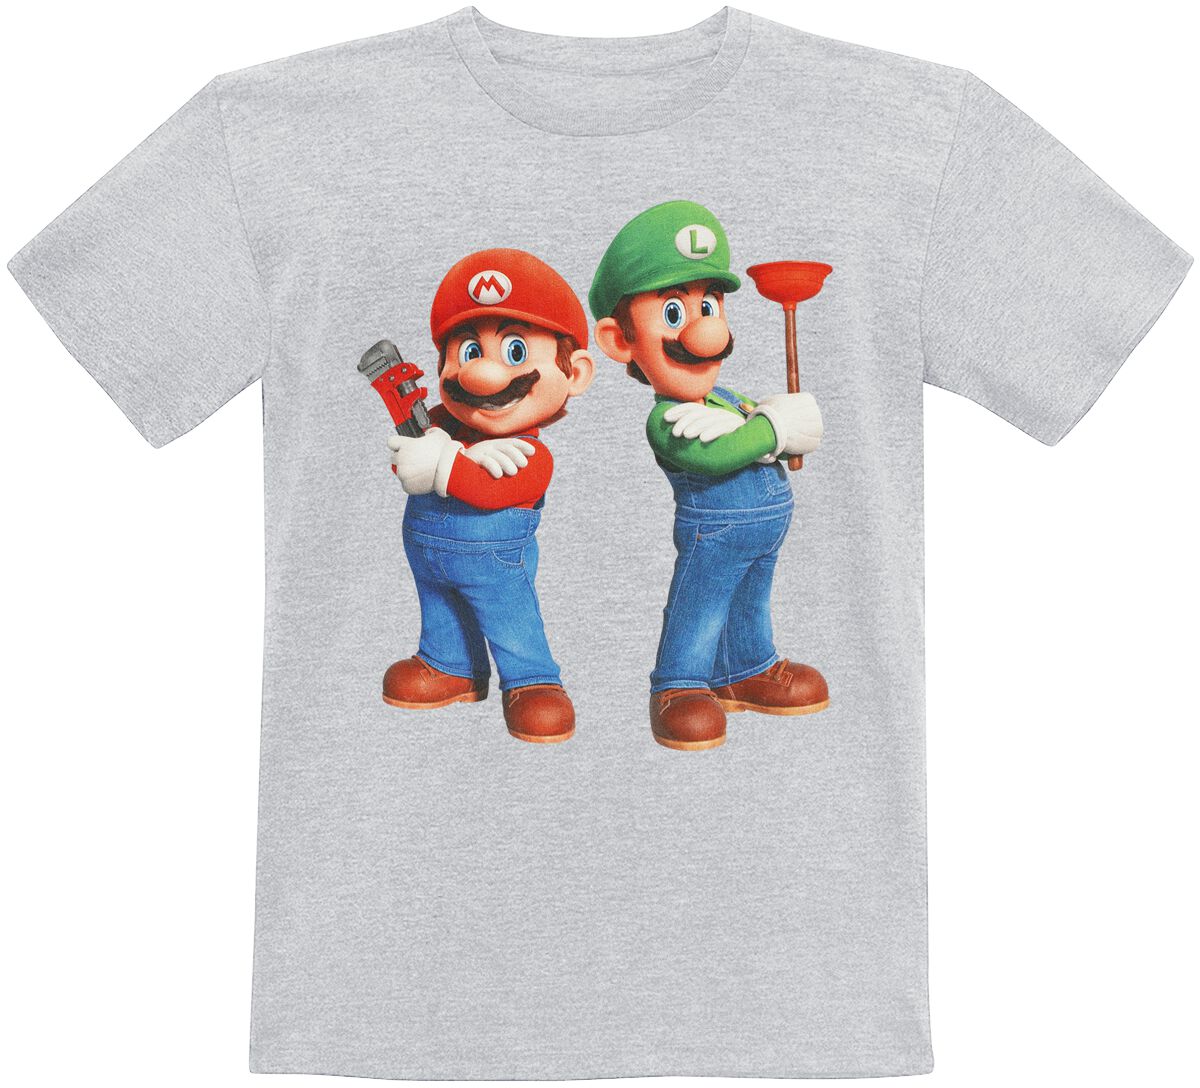 Super Mario - Gaming T-Shirt für Kleinkinder - Kids - Plumbing Bros. - für Mädchen & Jungen - grau